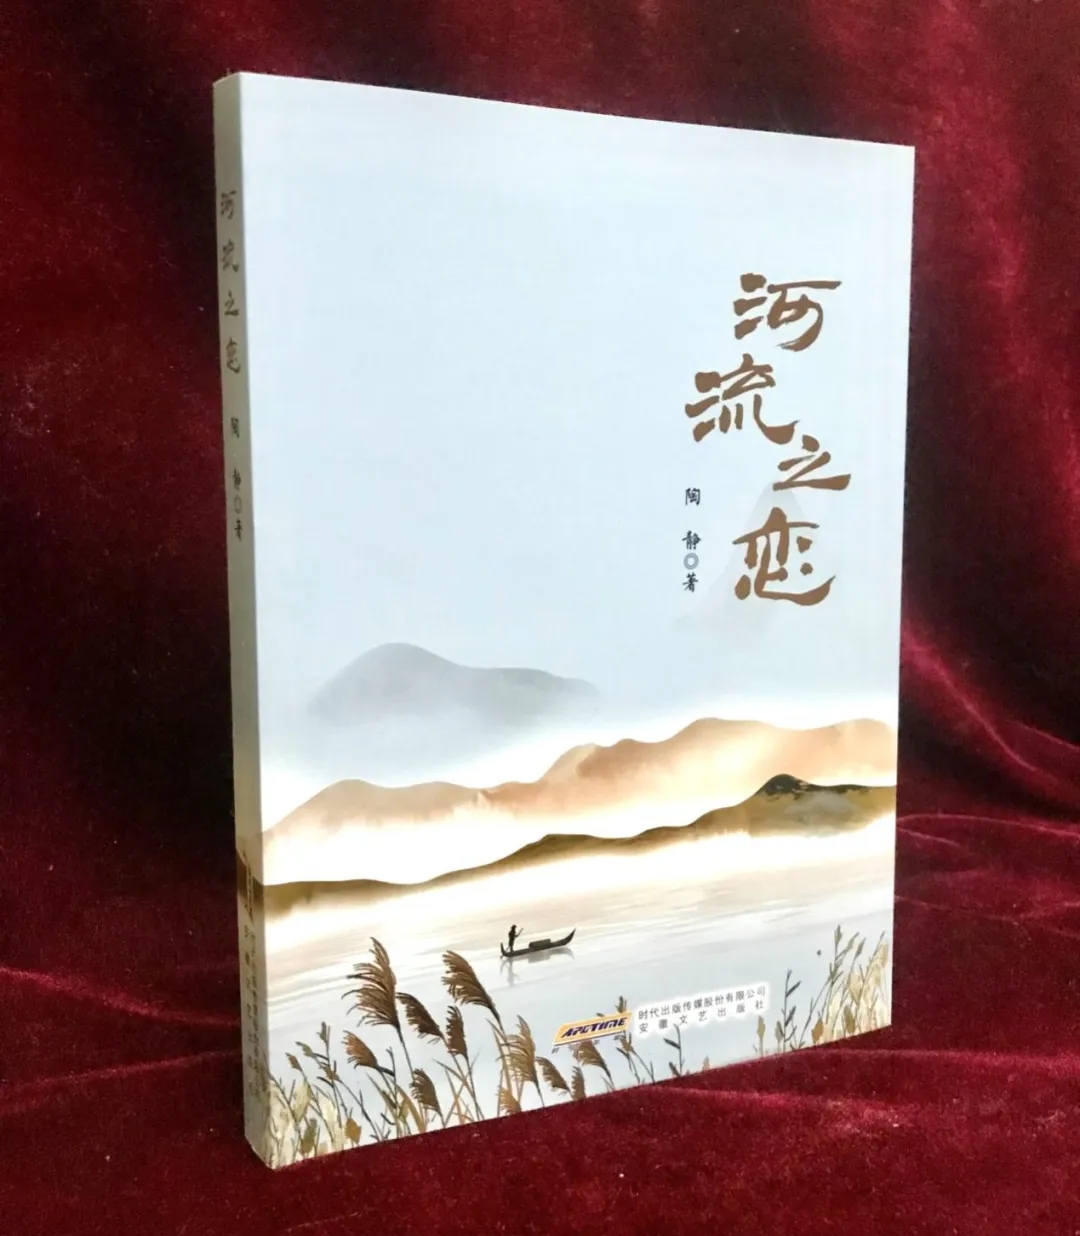 新书发布 | 作家陶静散文集《河流之恋》出版发行